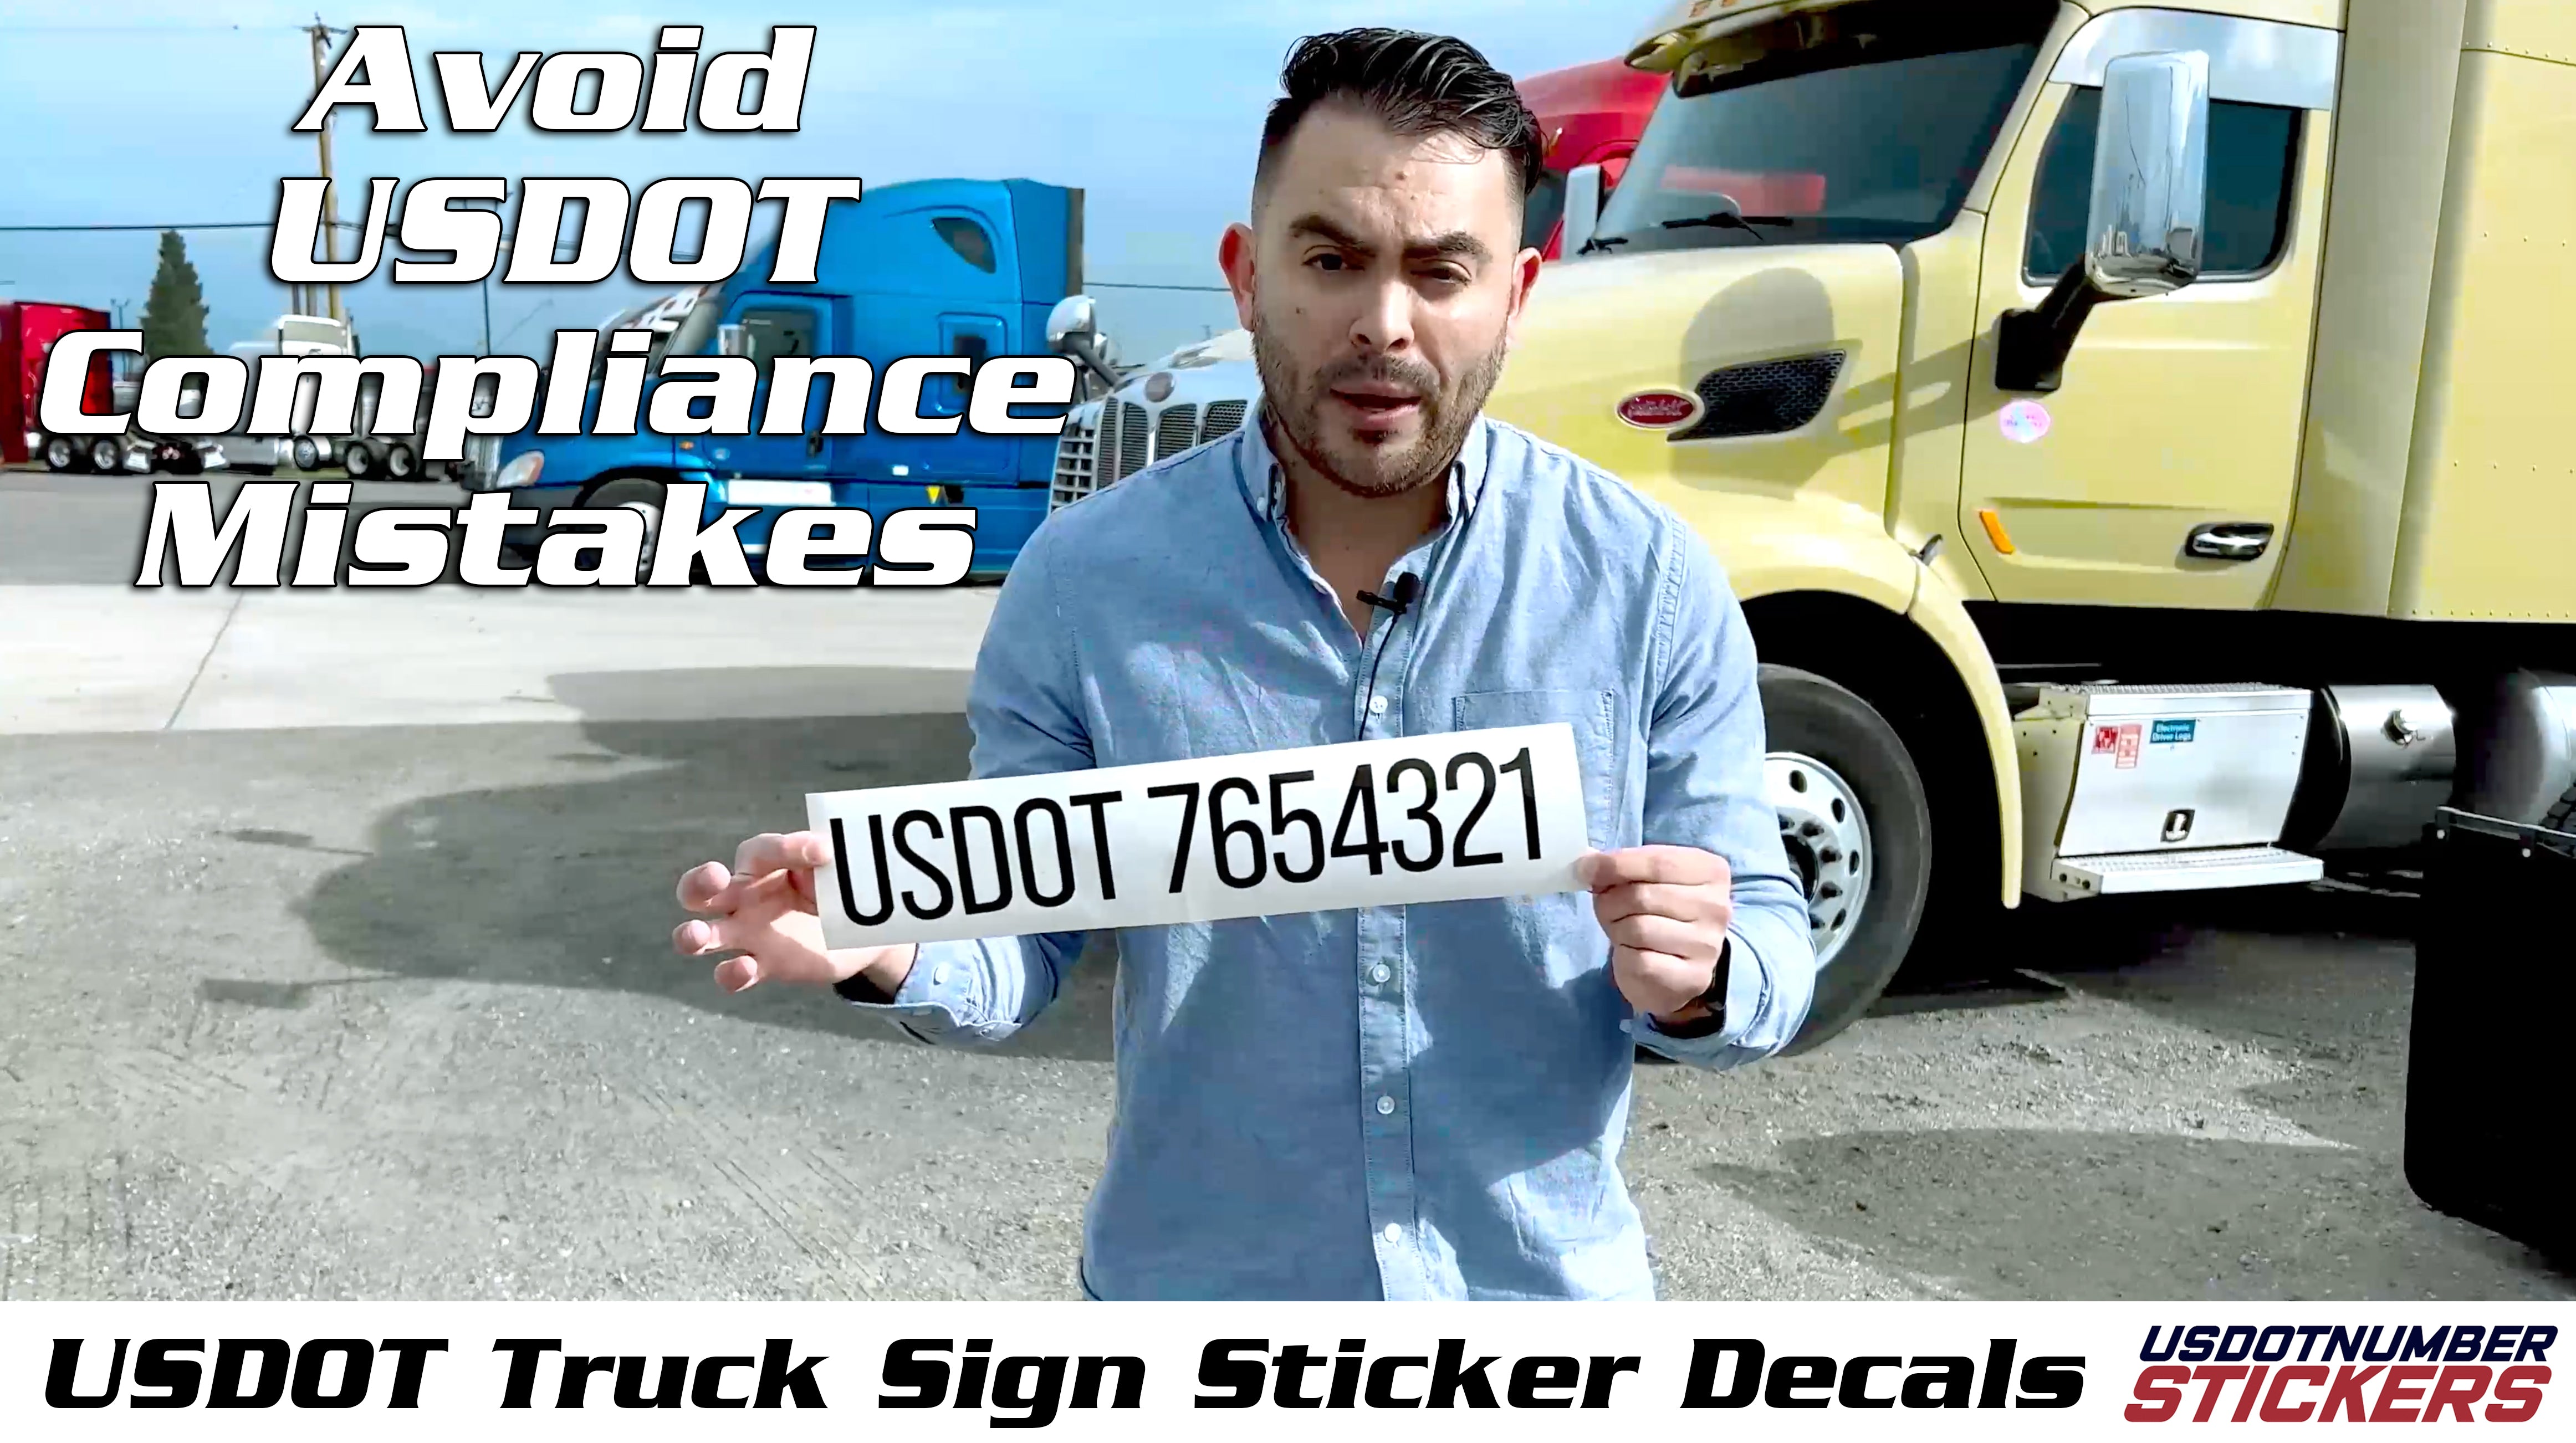 USDOT Number Sticker For Dept of Transportation Compliance